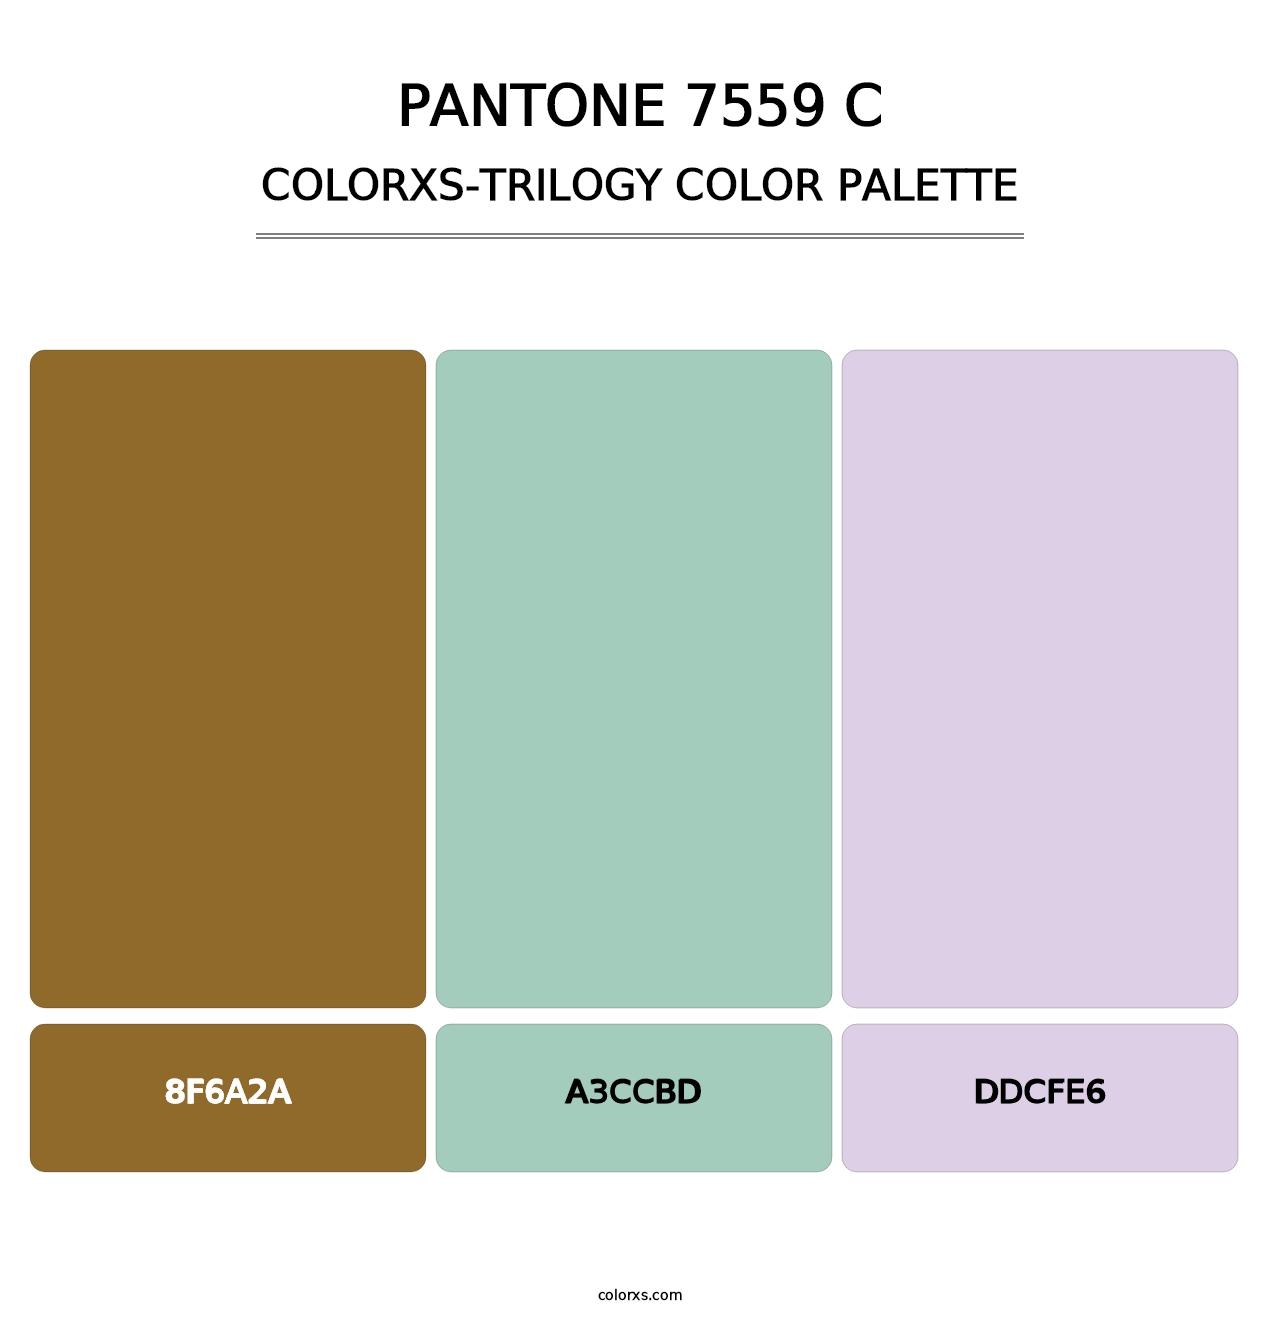 PANTONE 7559 C - Colorxs Trilogy Palette